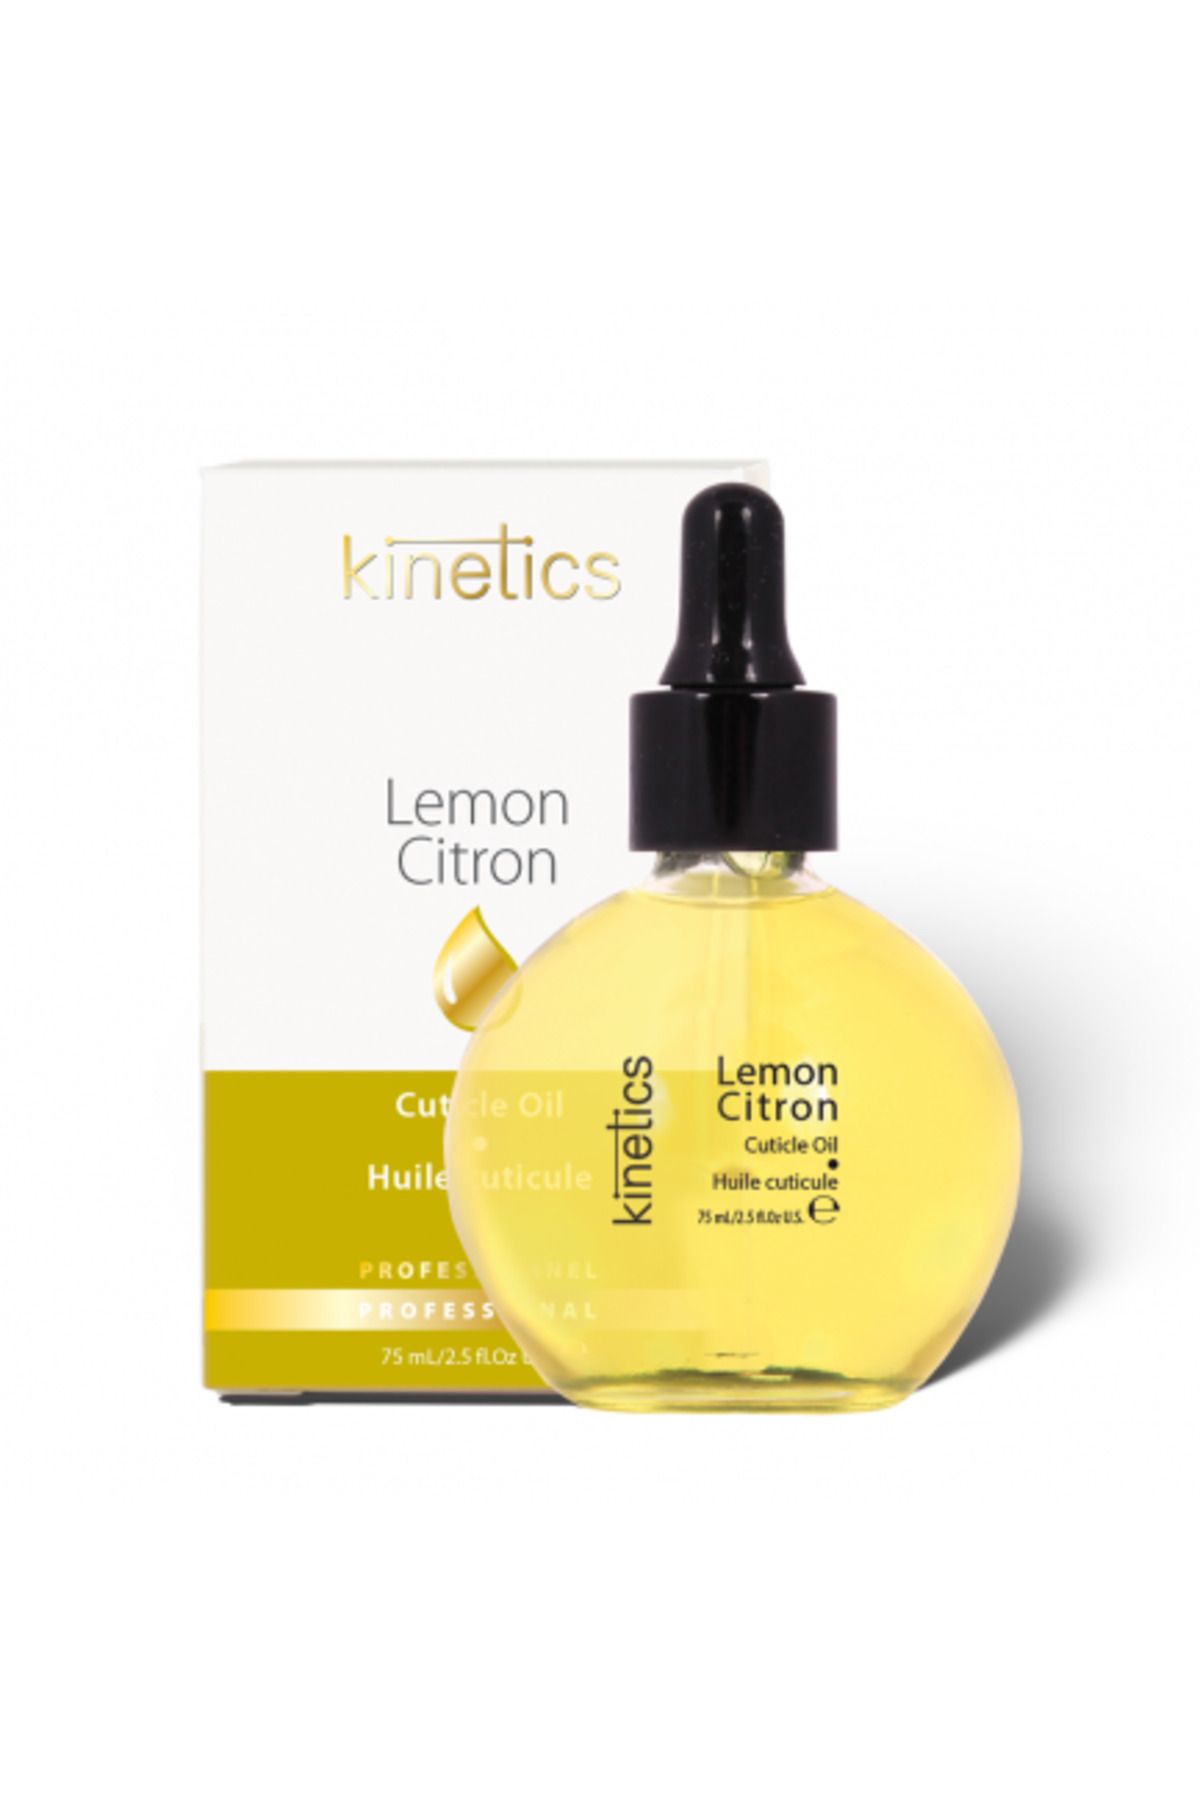 kinetics Lemon Cuticle Oil 75ml Tırnak Kütikül Besleyici Yağ